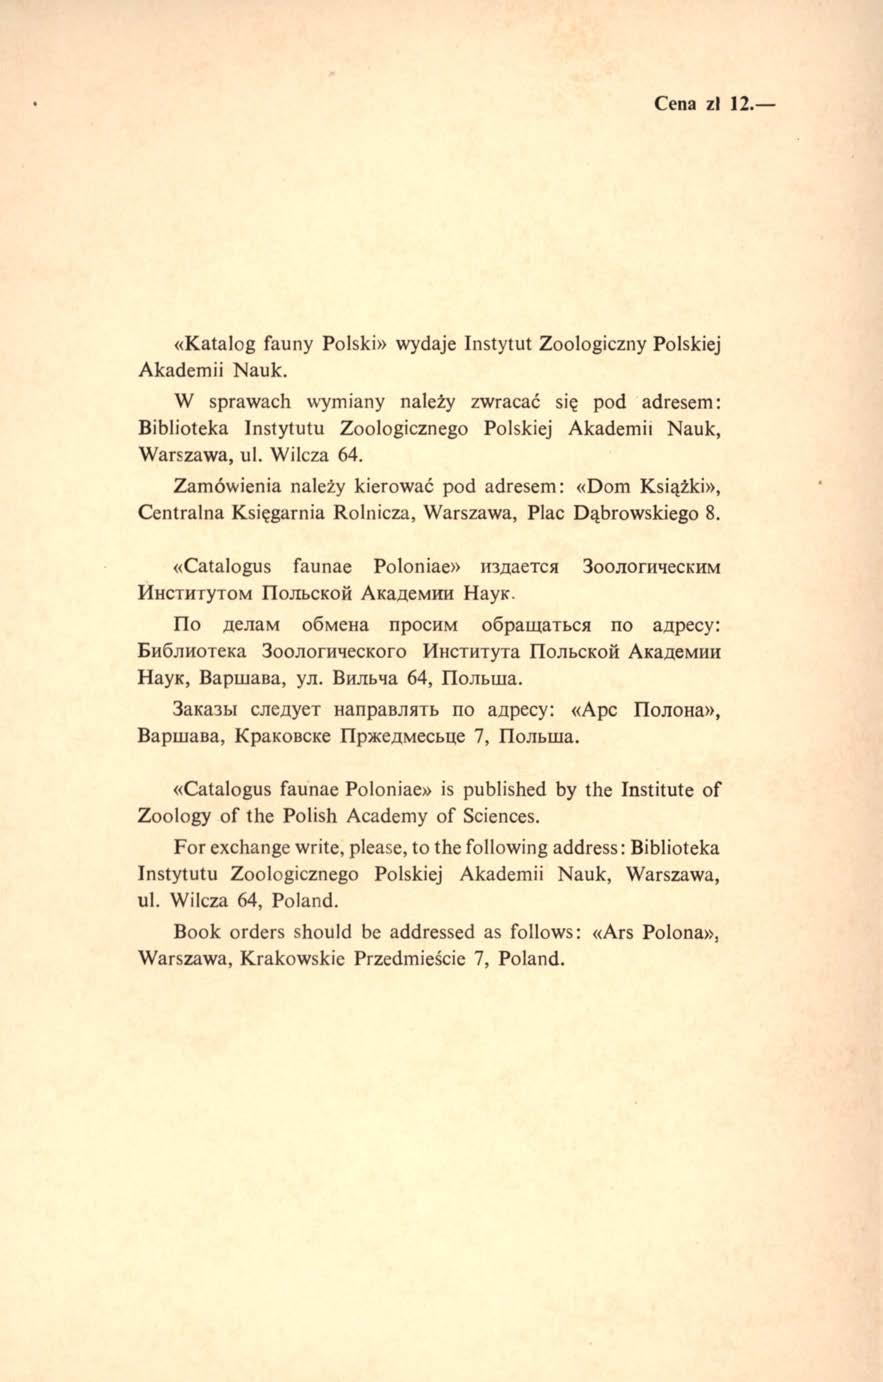 Cena zl 12. «Katalog fauny Polski» wydaje Instytut Zoologiczny Polskiej Akademii Nauk.